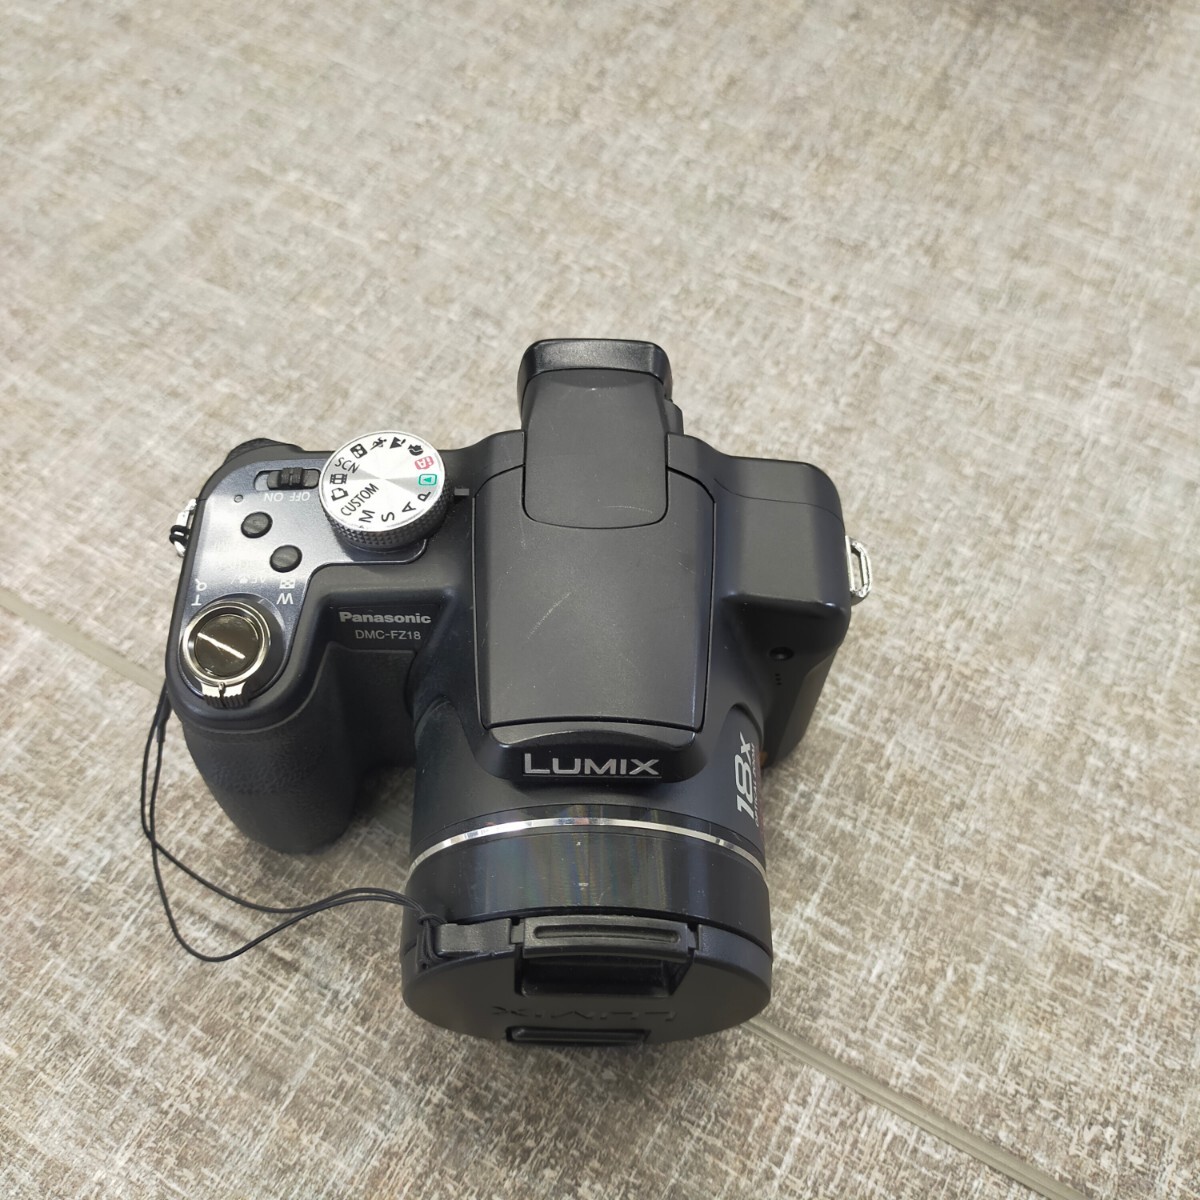 す1231 デジタルカメラ パナソニック Panasonic LUMIX DMC-FZ18ルミックス コンパクト 充電器付 デジカメ ソフトケース付_画像3